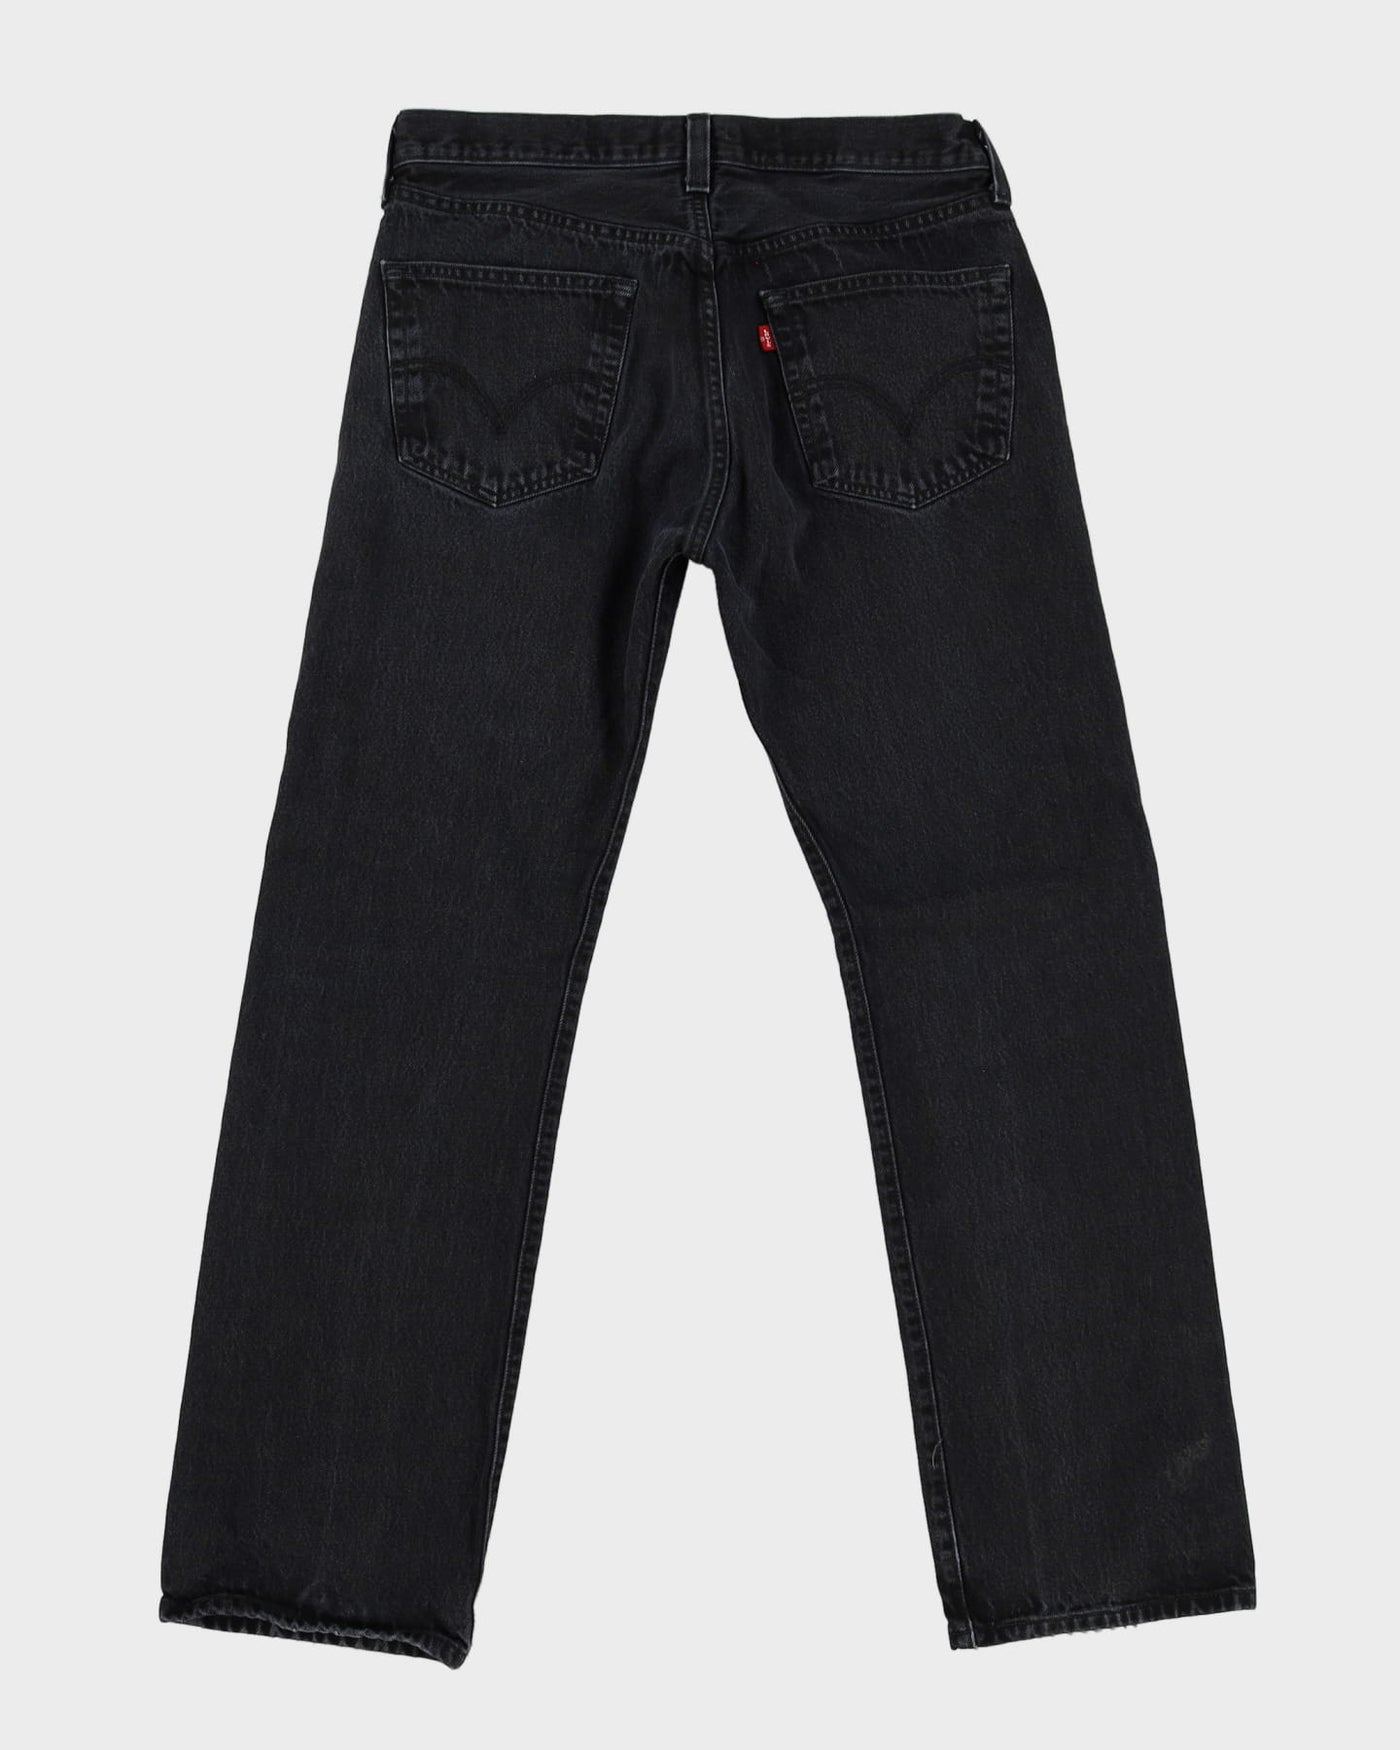 Levi's 501 Dark Wash Jeans - W34 L32